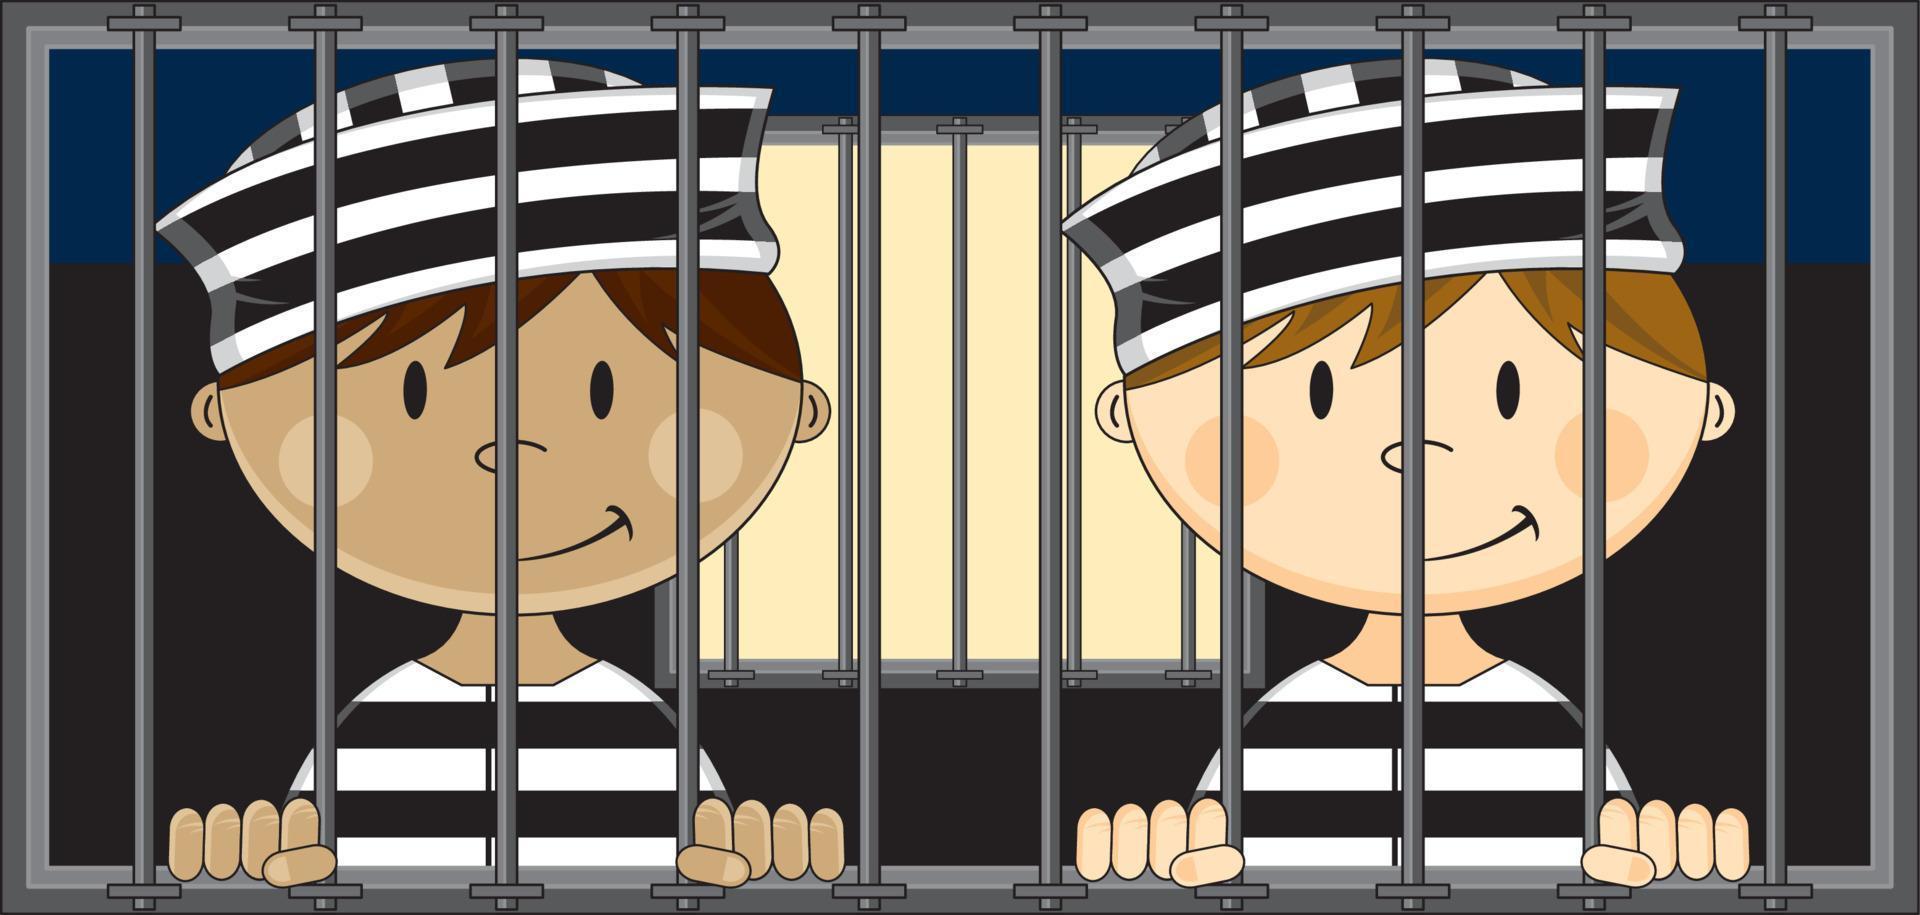 Karikatur Gefangene tragen klassisch gestreift Gefängnis Uniform im Gefängnis Zelle vektor